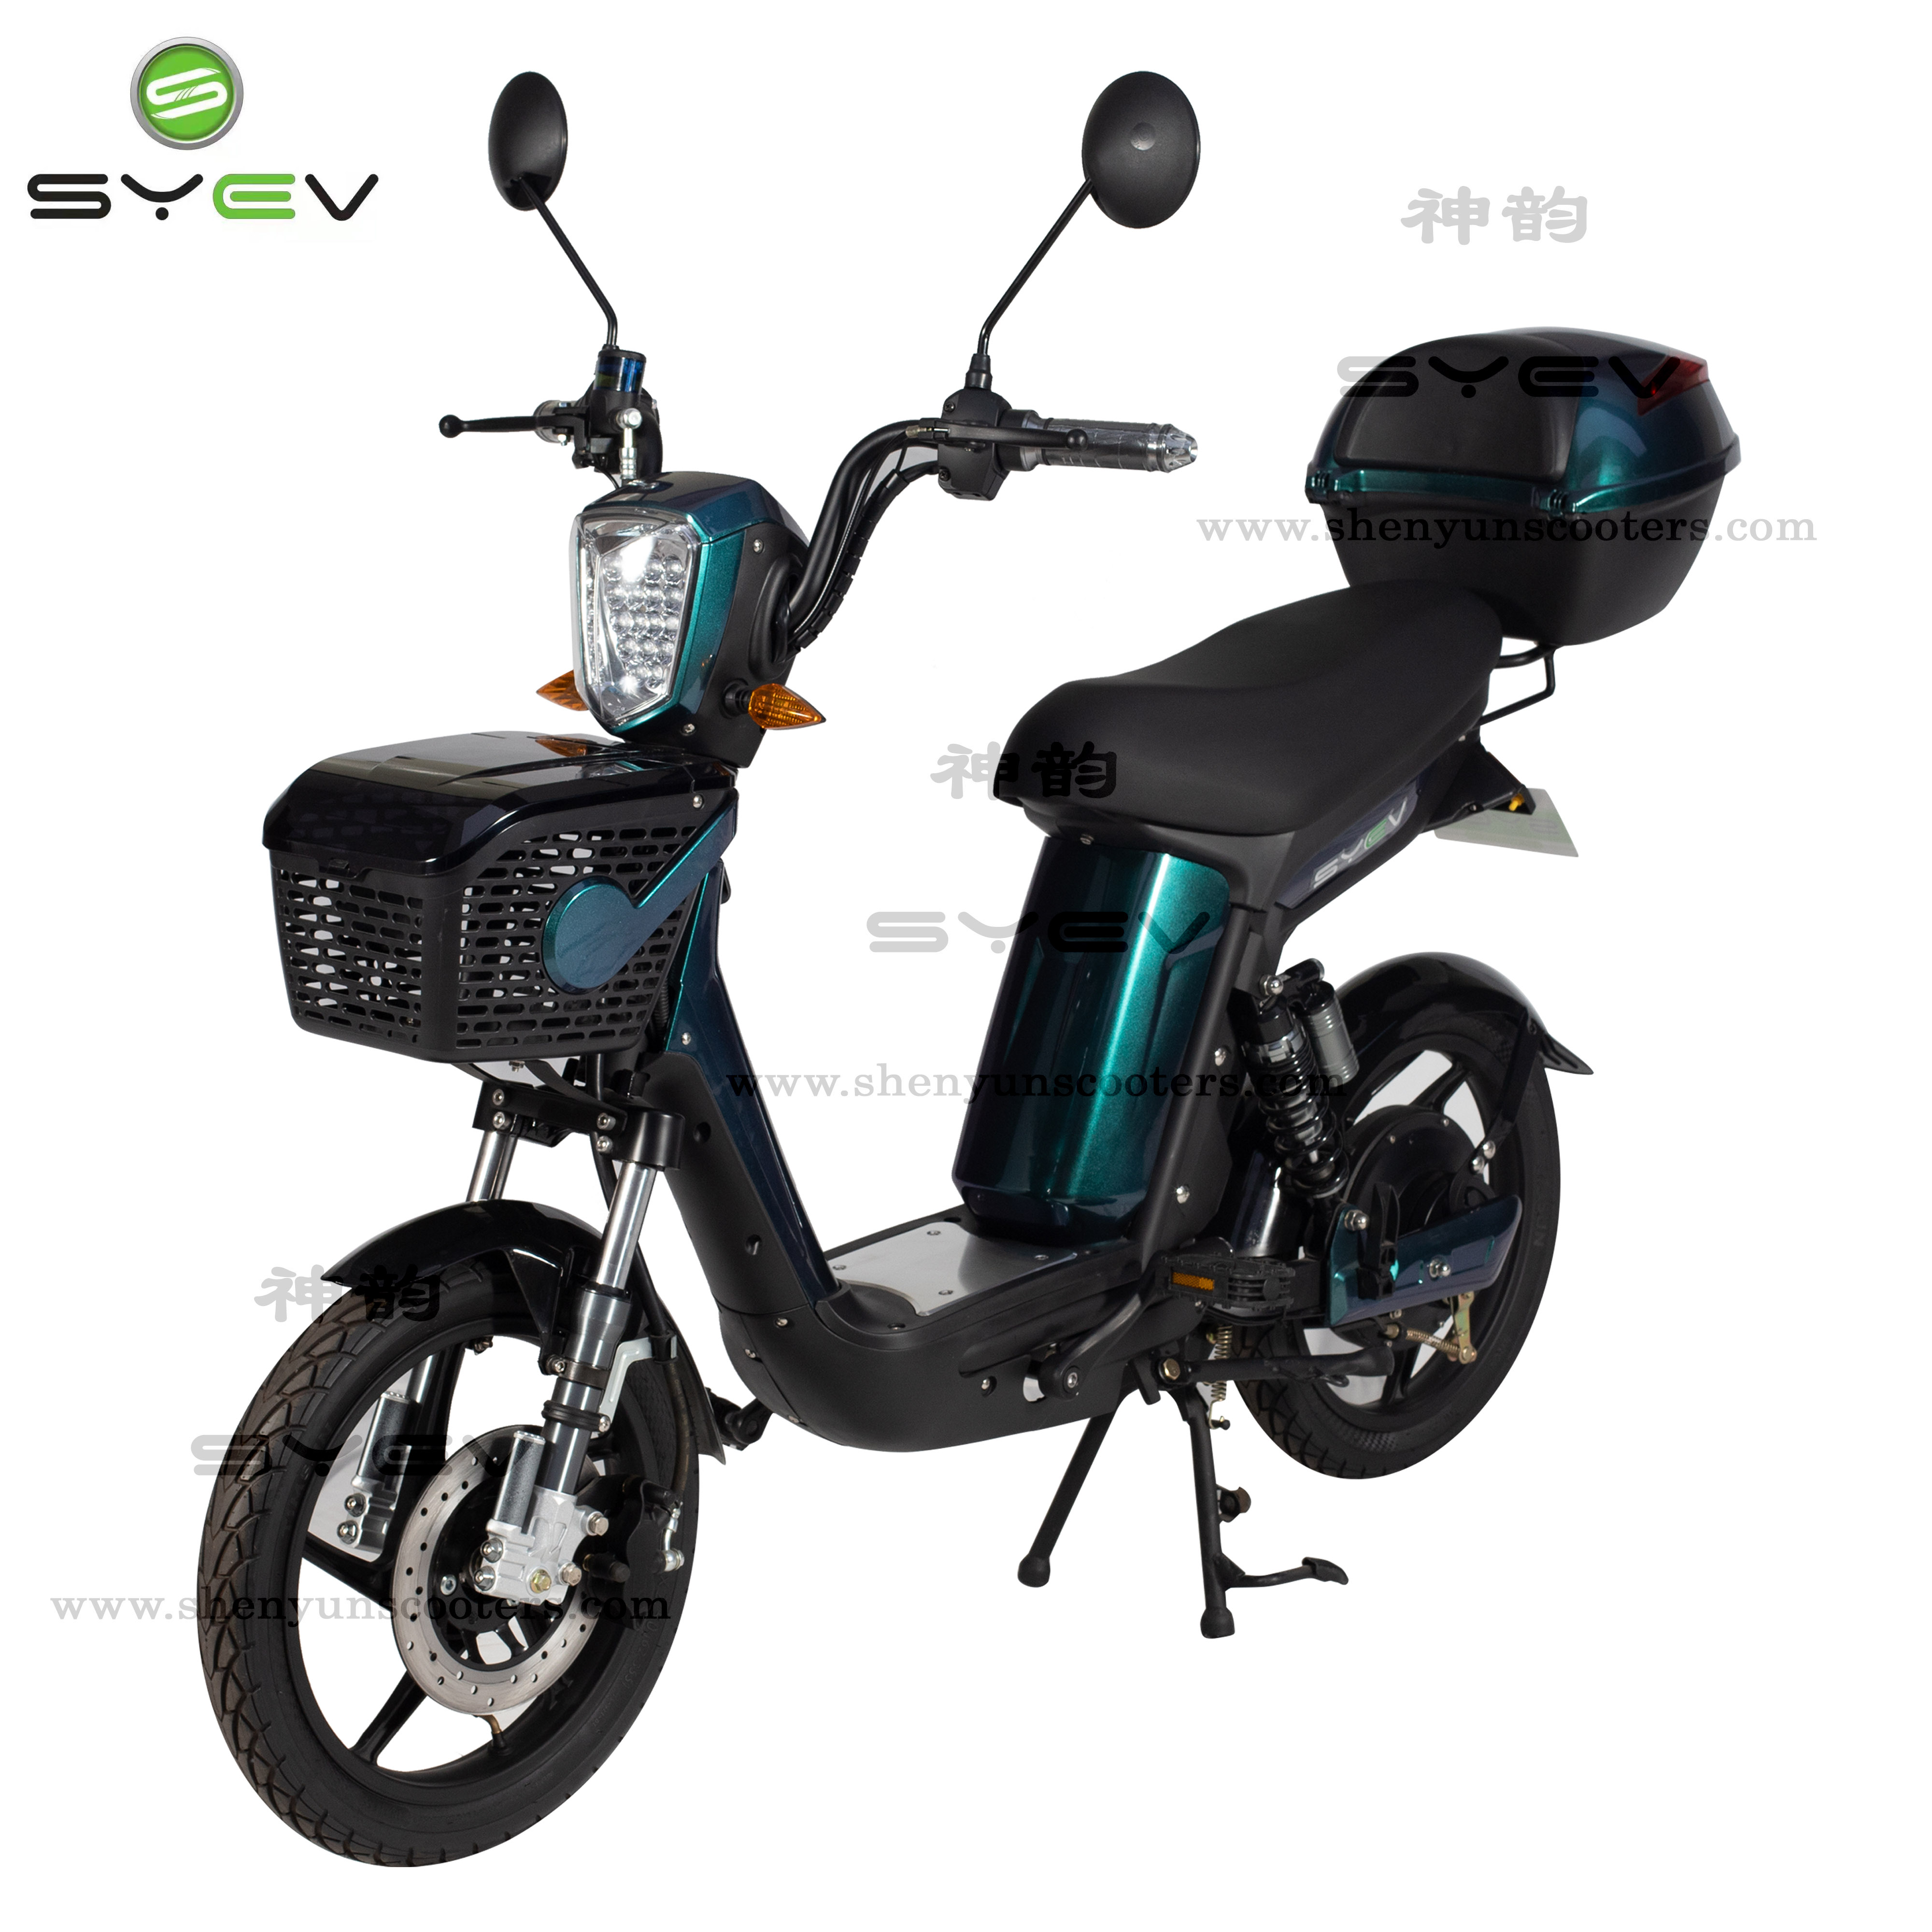 Syev 48V 500W Bicicleta de reparto eléctrica Bicicleta de carga Bicicleta eléctrica con pedales